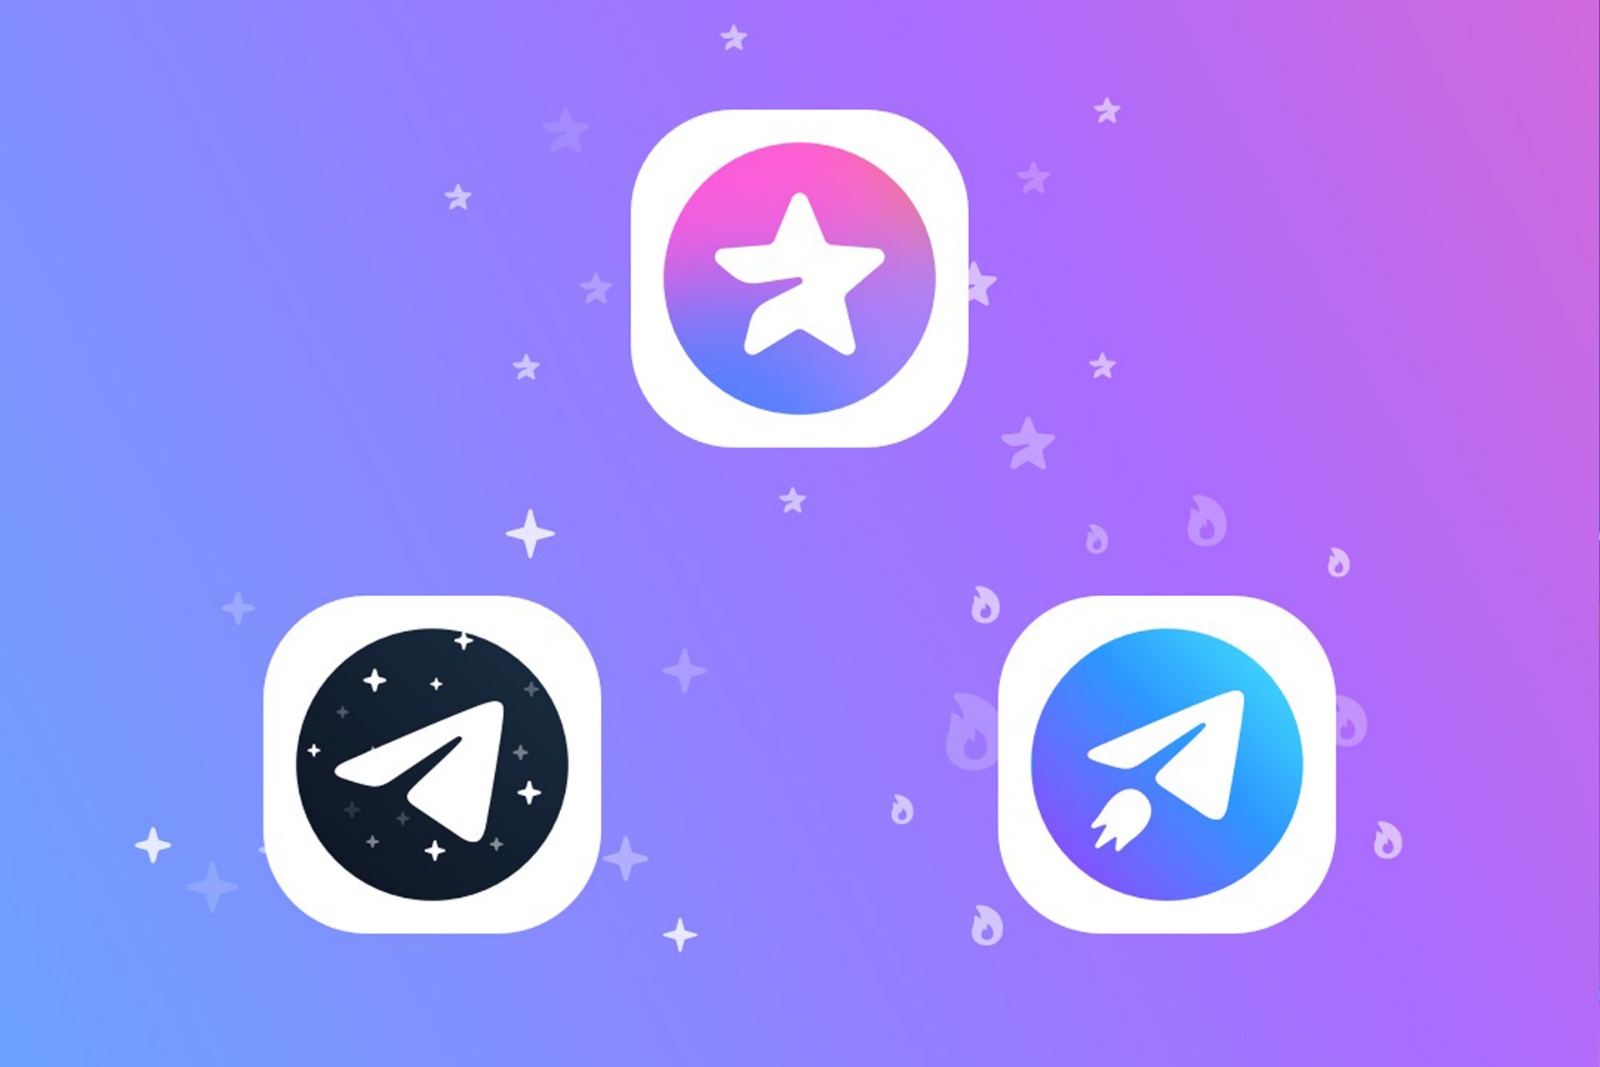 Dedicated Telegram Premium subscription icons